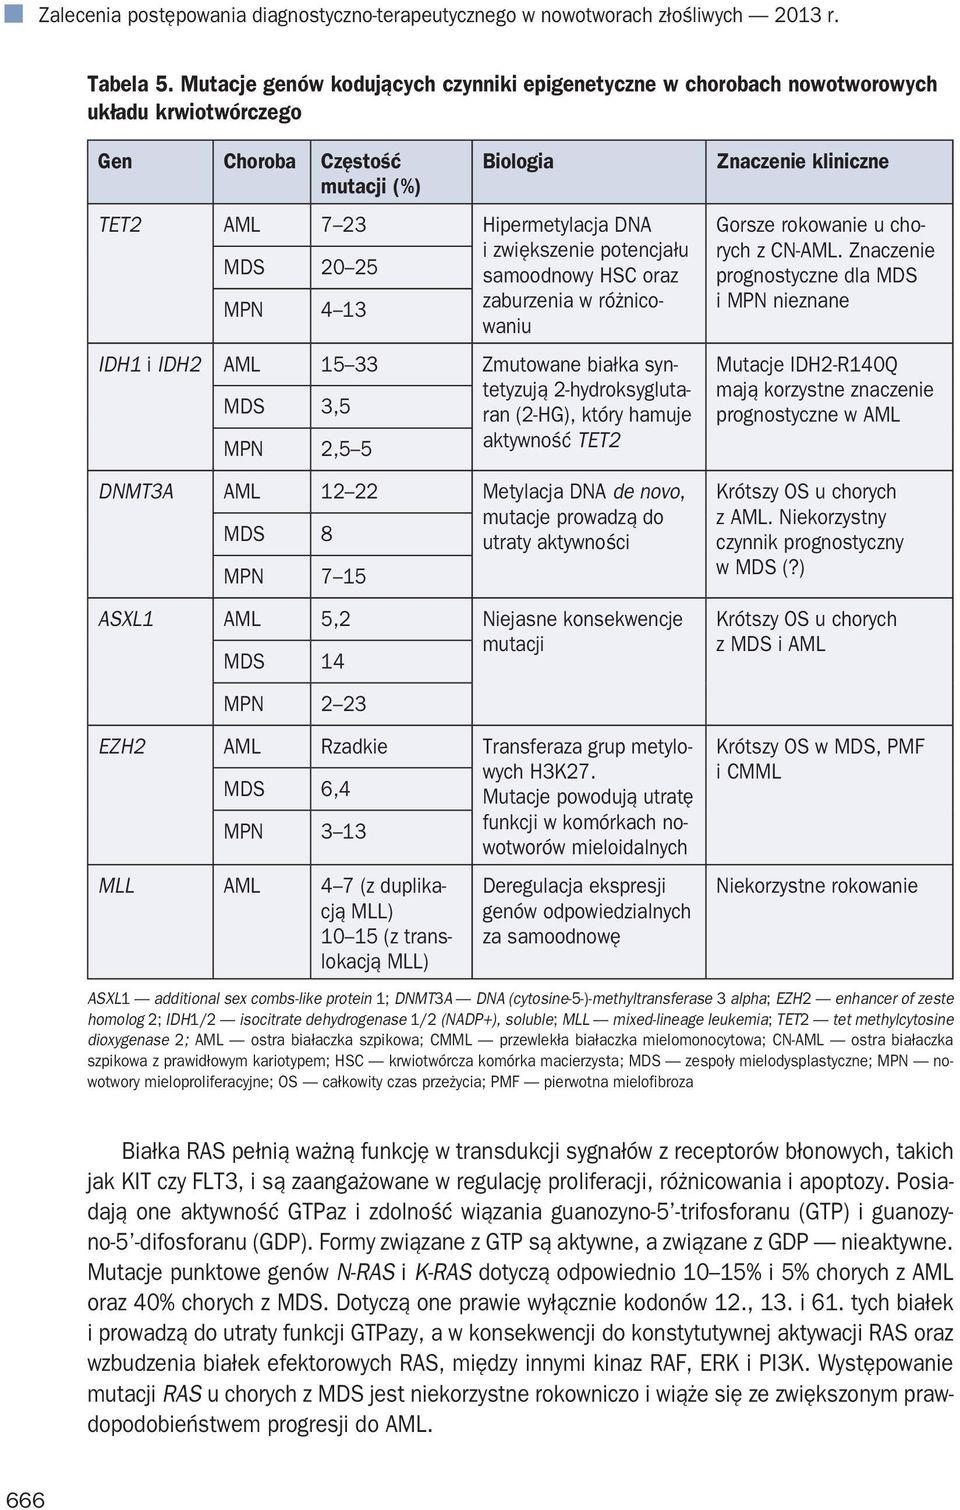 potencjału samoodnowy HSC oraz MPN 4 13 zaburzenia w różnicowaniu IDH1 i IDH2 AML 15 33 Zmutowane białka syntetyzują MDS 3,5 2-hydroksygluta- ran (2-HG), który hamuje MPN 2,5 5 aktywność TET2 DNMT3A